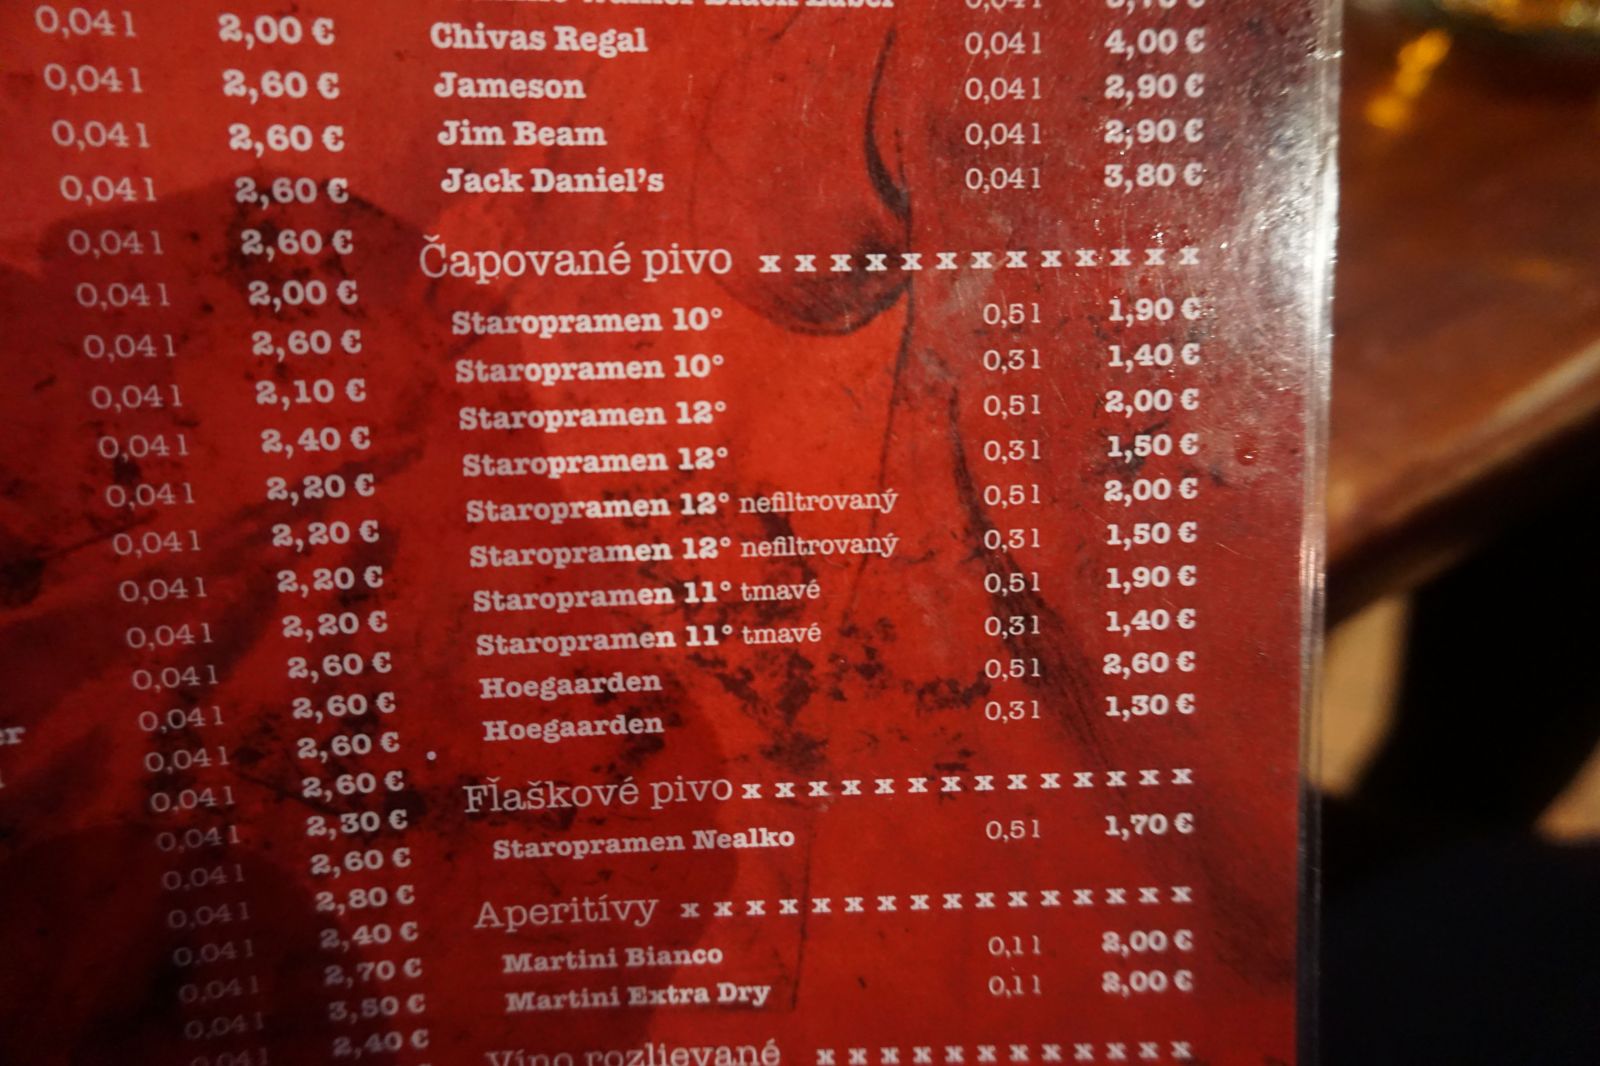 Za 4 poldecáky zaplatíš len 3€, no dvere na záchode nezavrieš. Navštívili sme najlacnejšie bary v centre Bratislavy